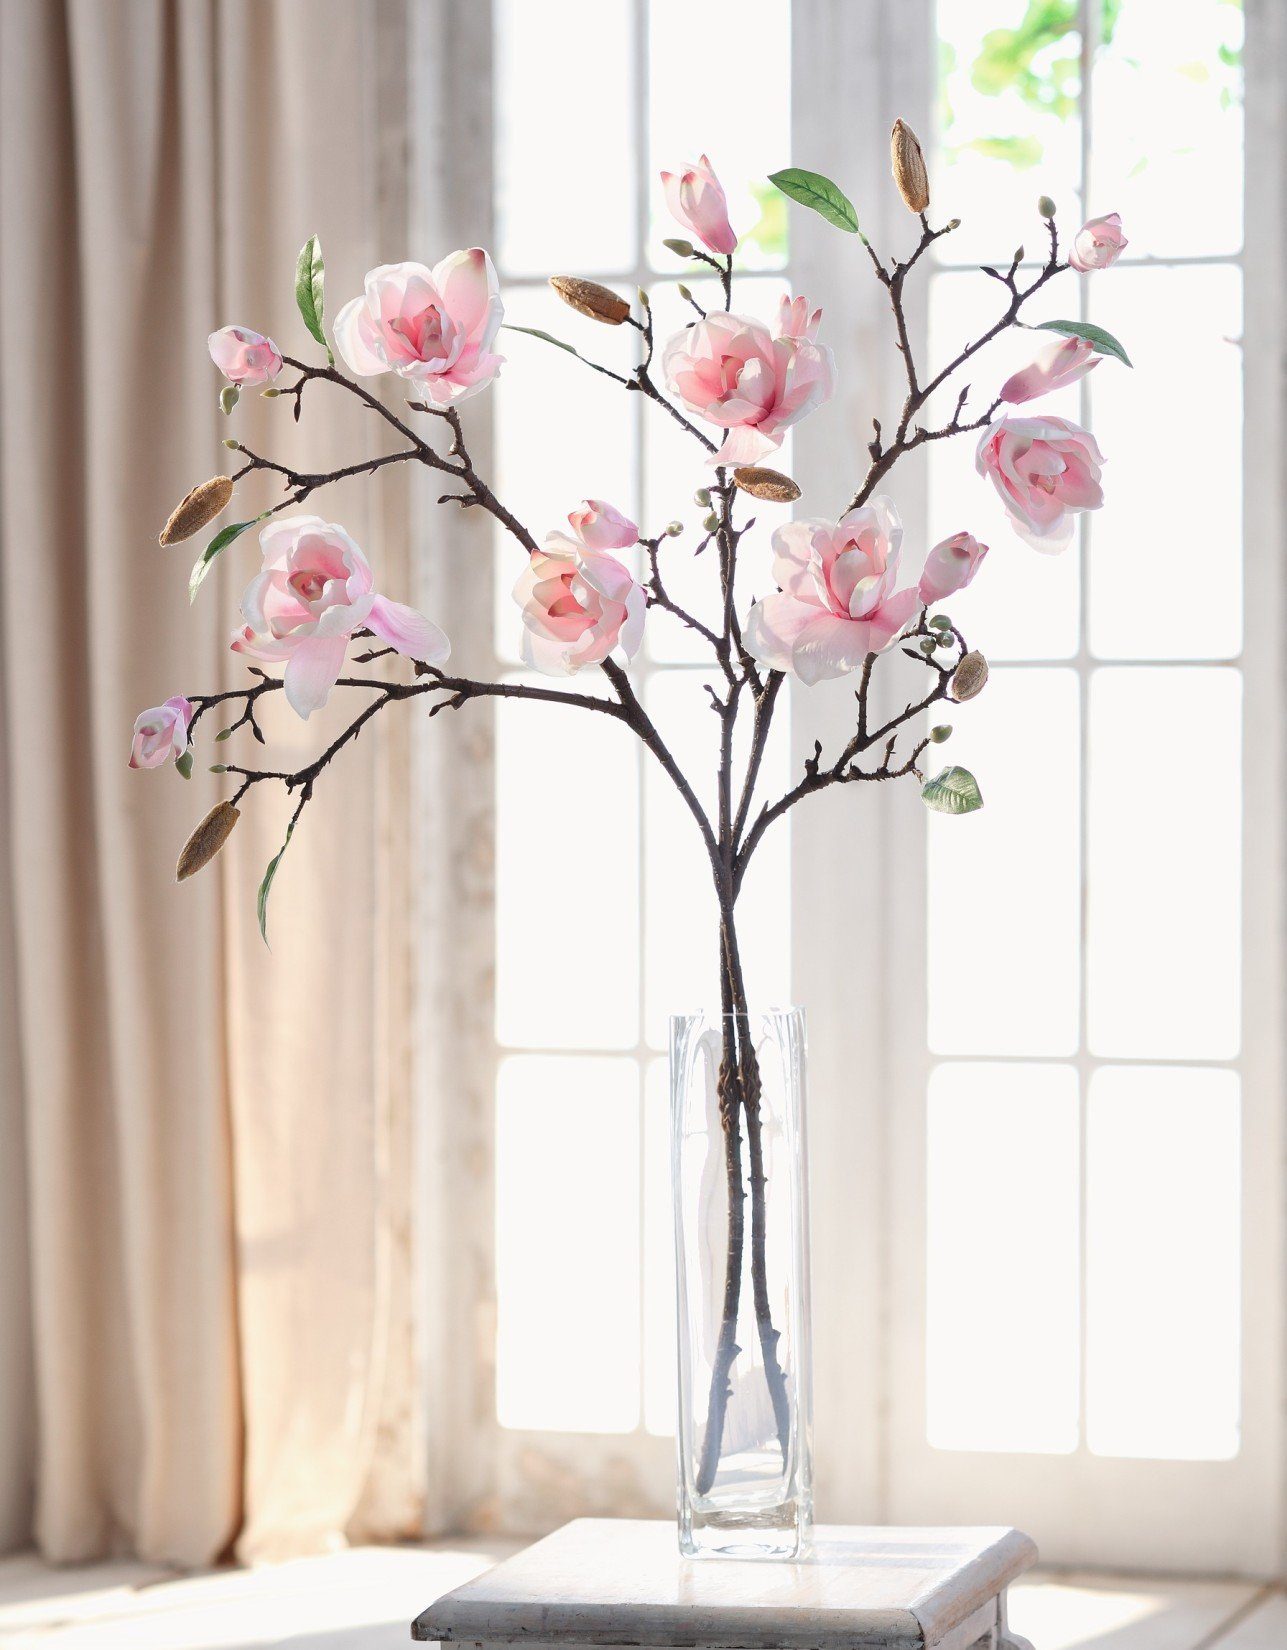 Kunstblume "Magnolie" zarte weiß + rosa Magnolienblüten, Dekozweige, Kunstpflanze Magnolie, Dekoleidenschaft, Höhe 82 cm, mit Textilblüten